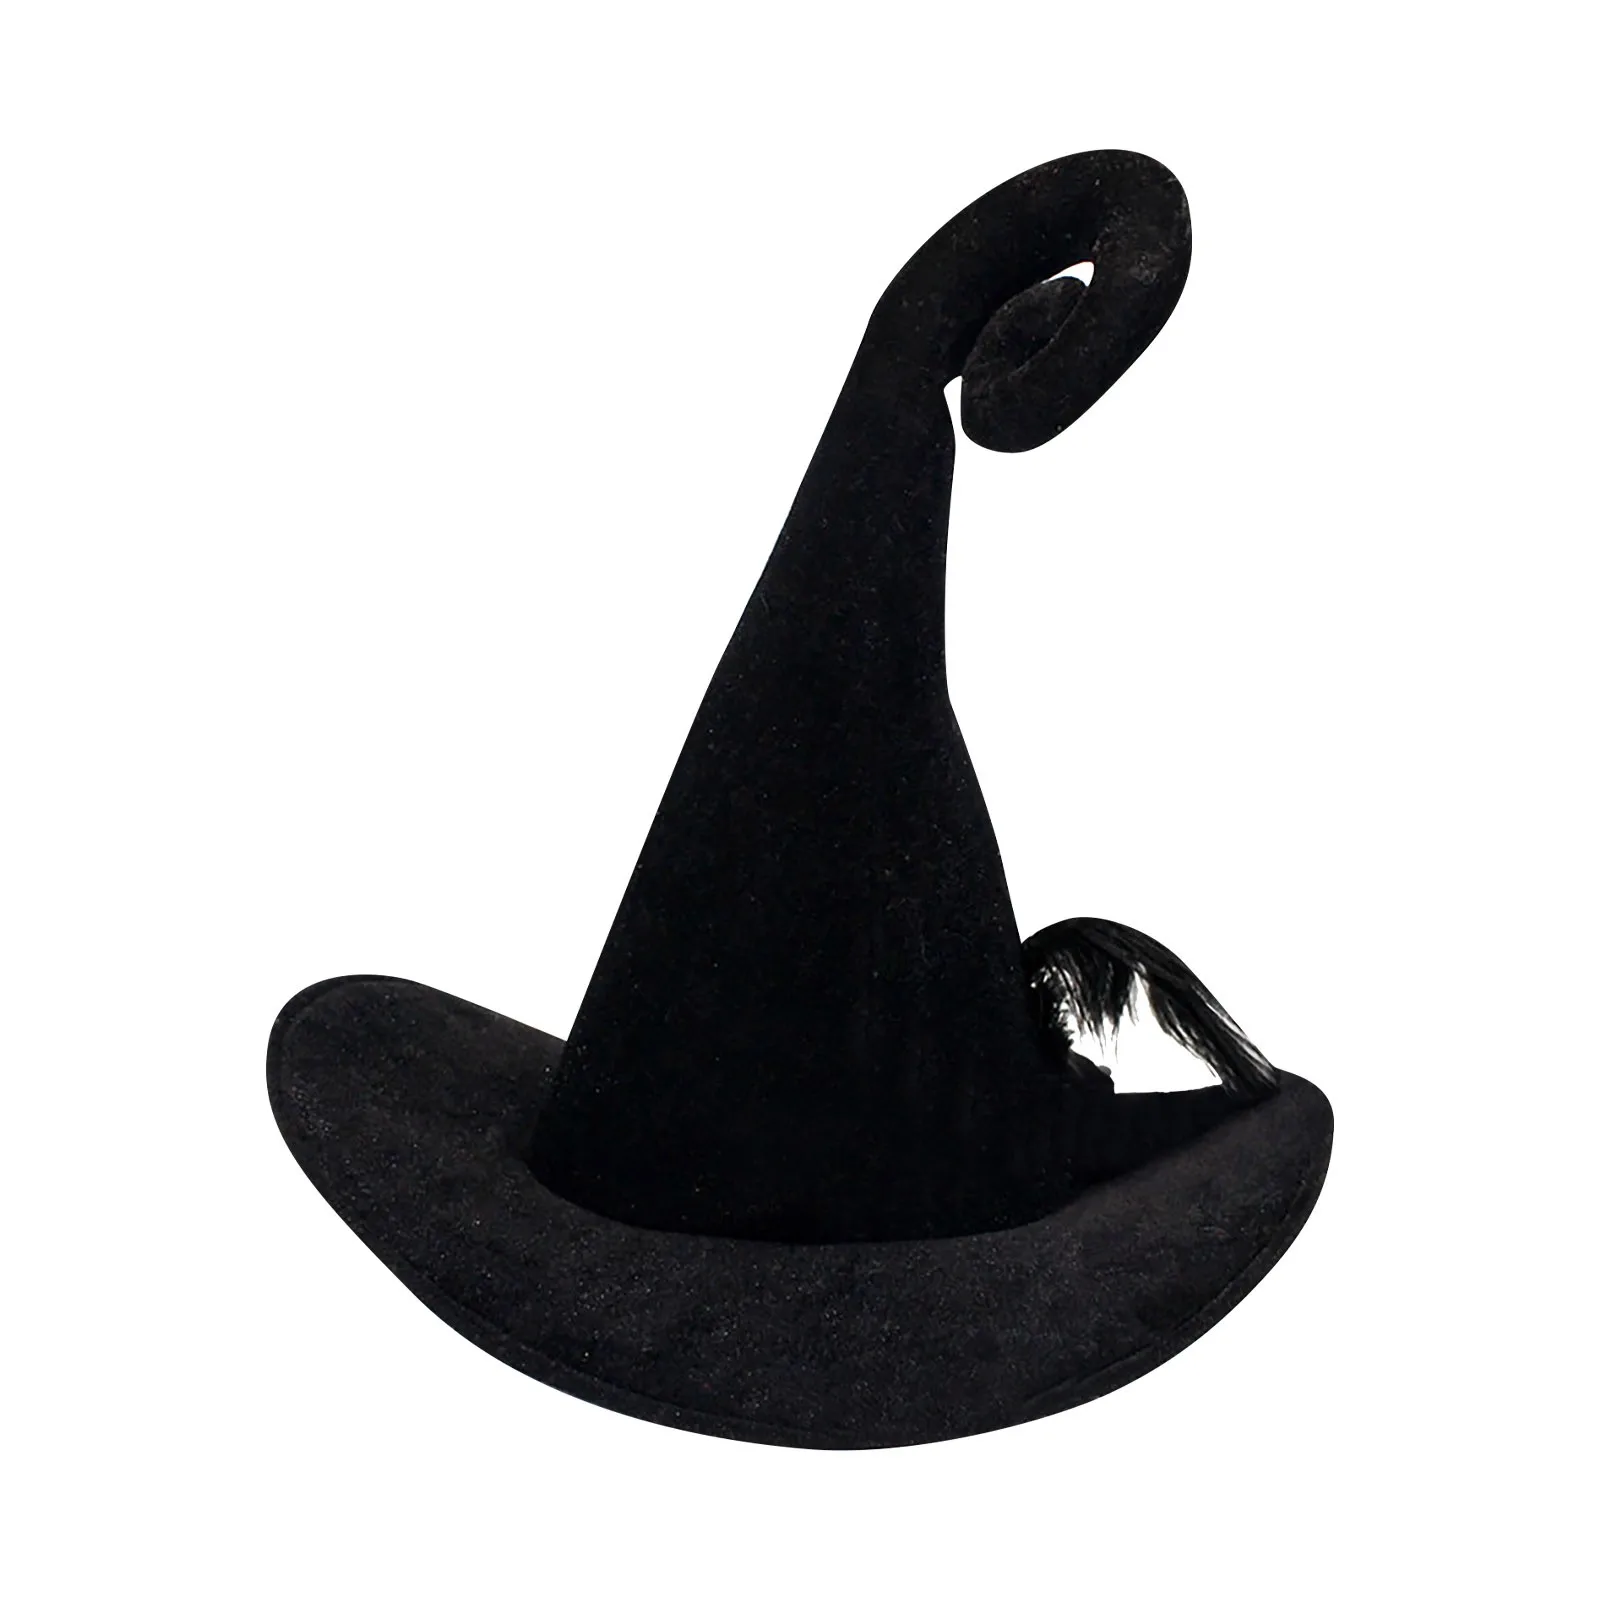 

Хэллоуин ведьма шляпа Хэллоуин украшение костюма ведьма шляпа с перьями Хэллоуин шляпа Хэллоуин Вечеринка Выпускной Декор